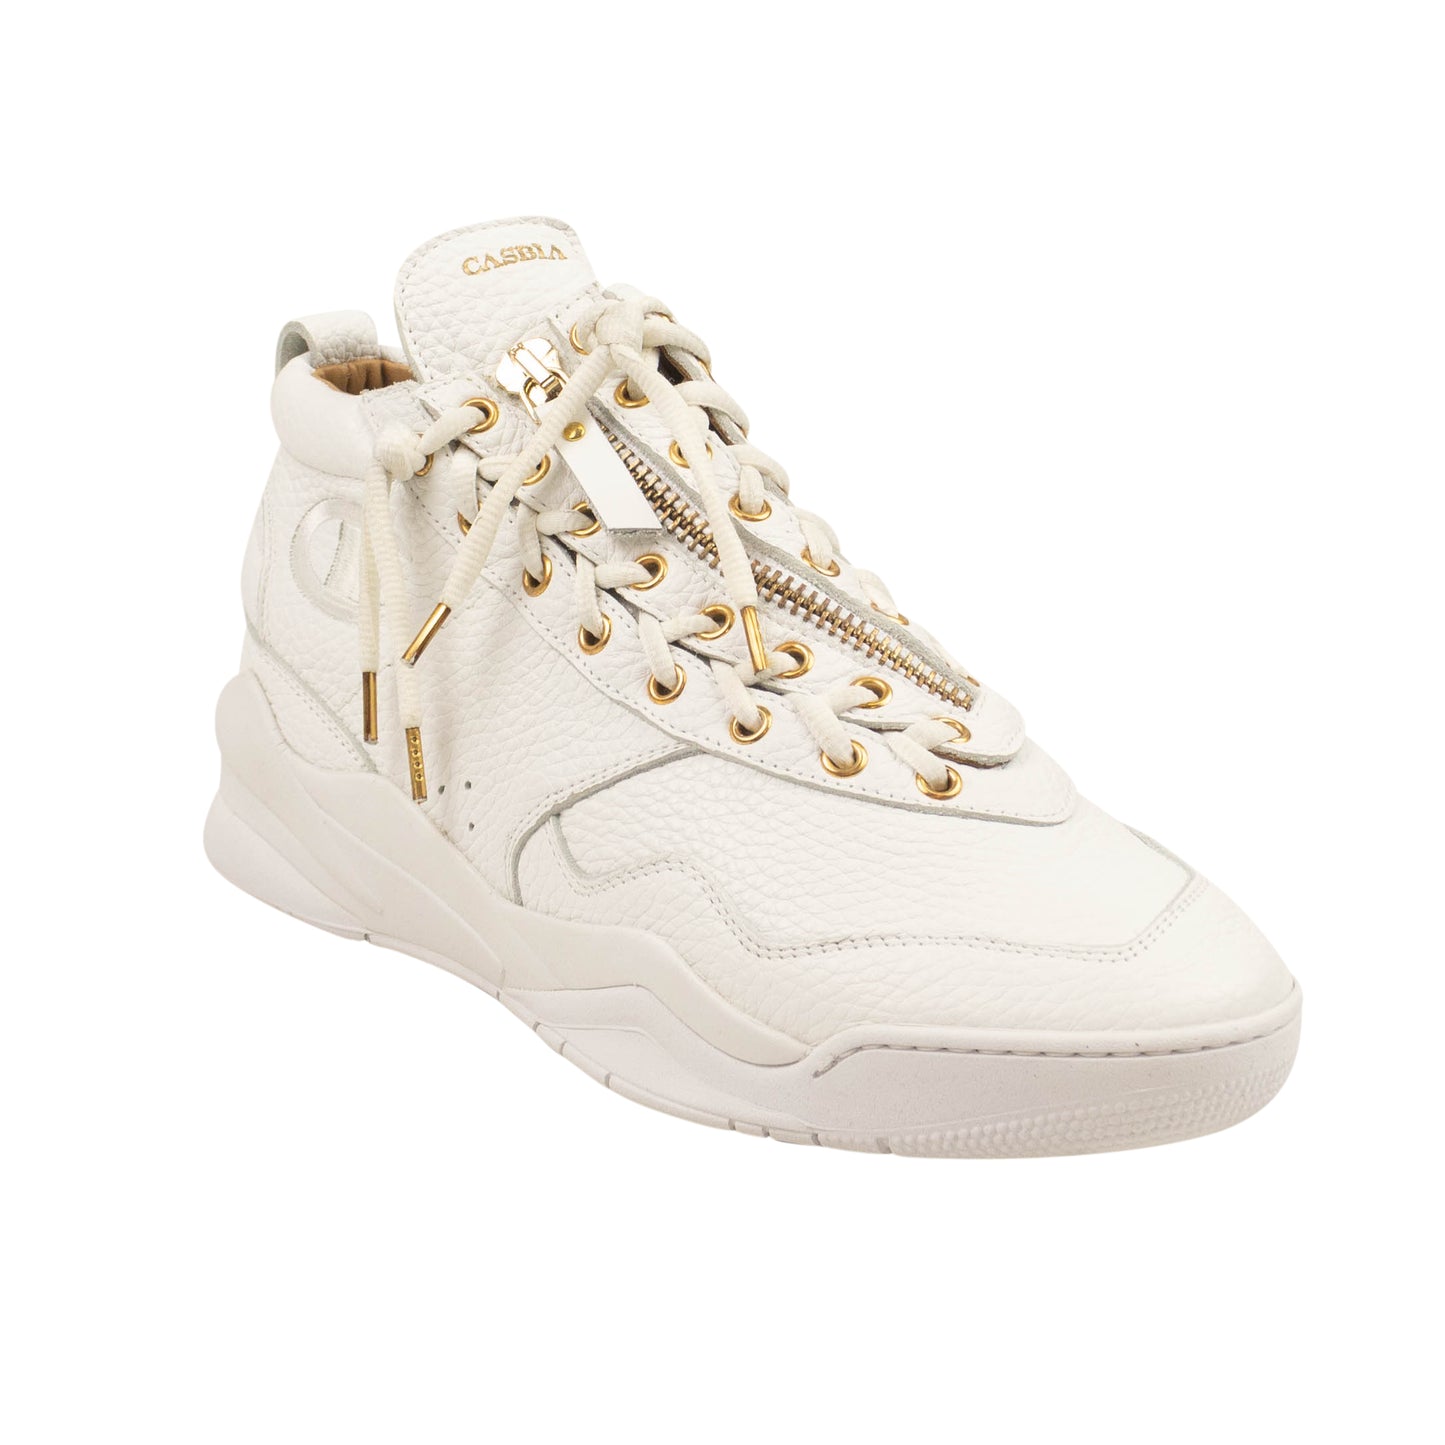 Casbia Awol Atlanta Sneakers - White